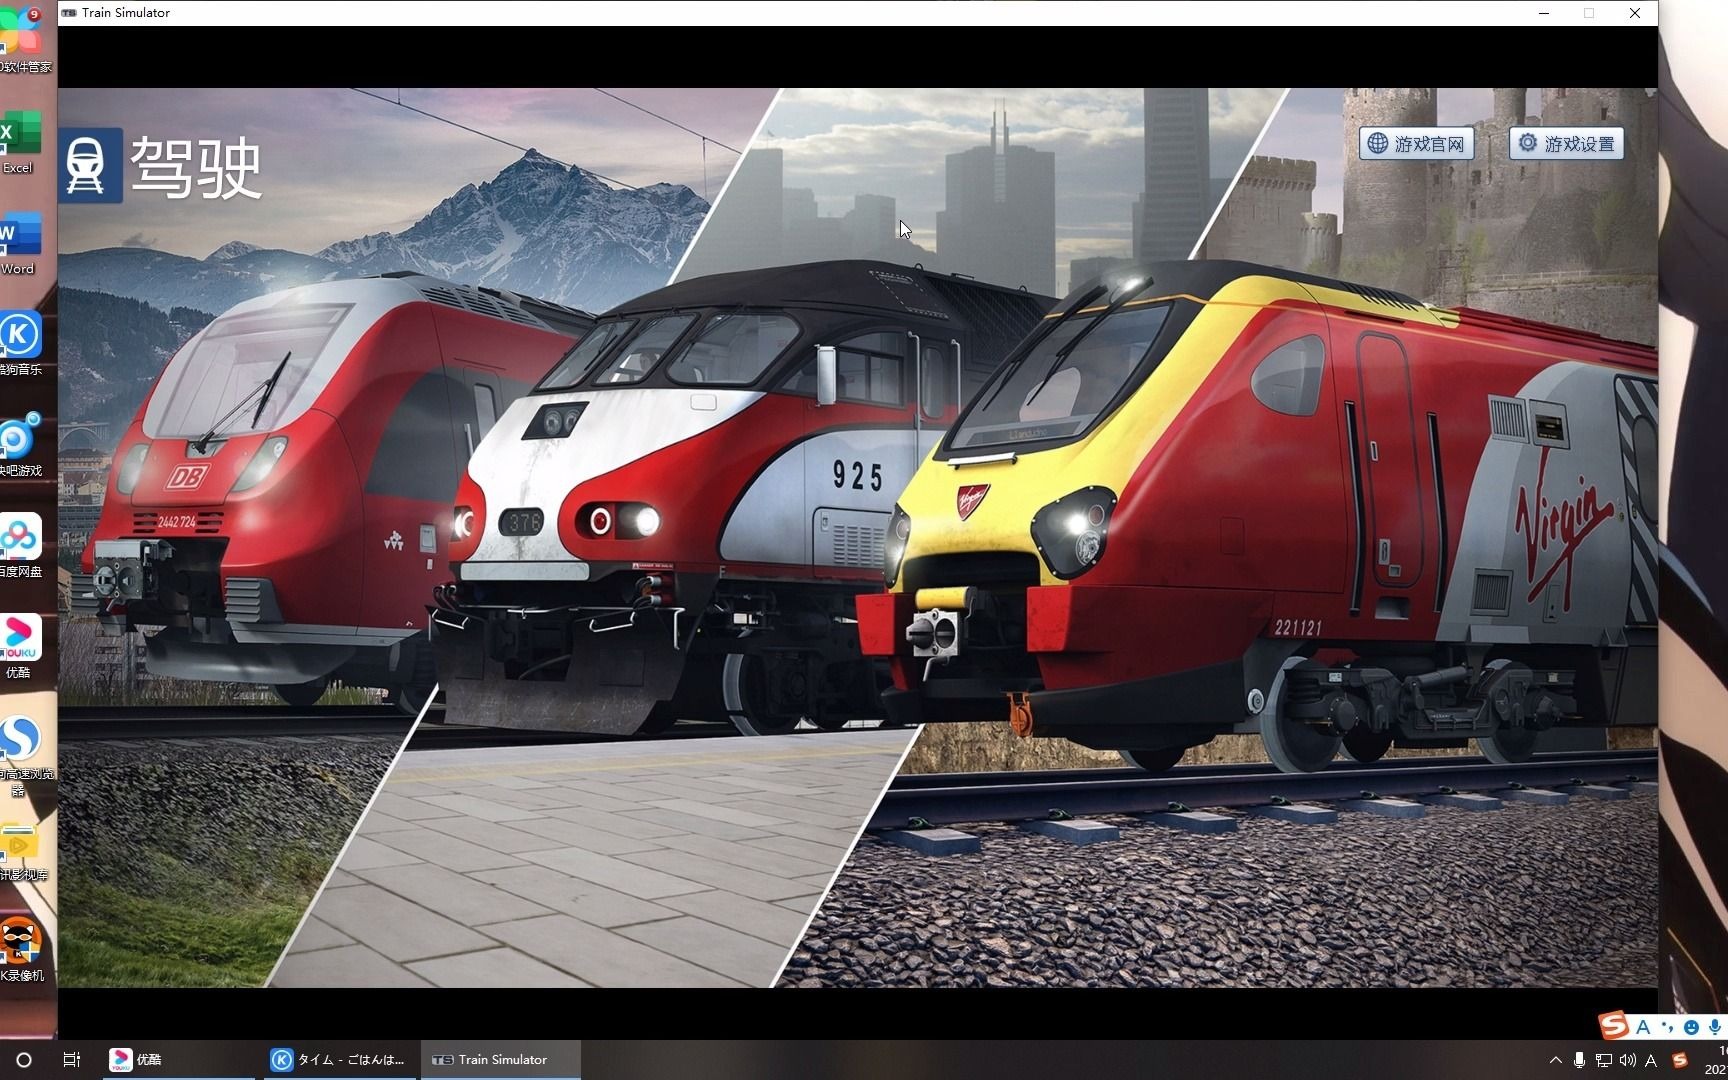 火车建造模拟器_手机游戏建造火车视频_视频火车建造手机游戏大全